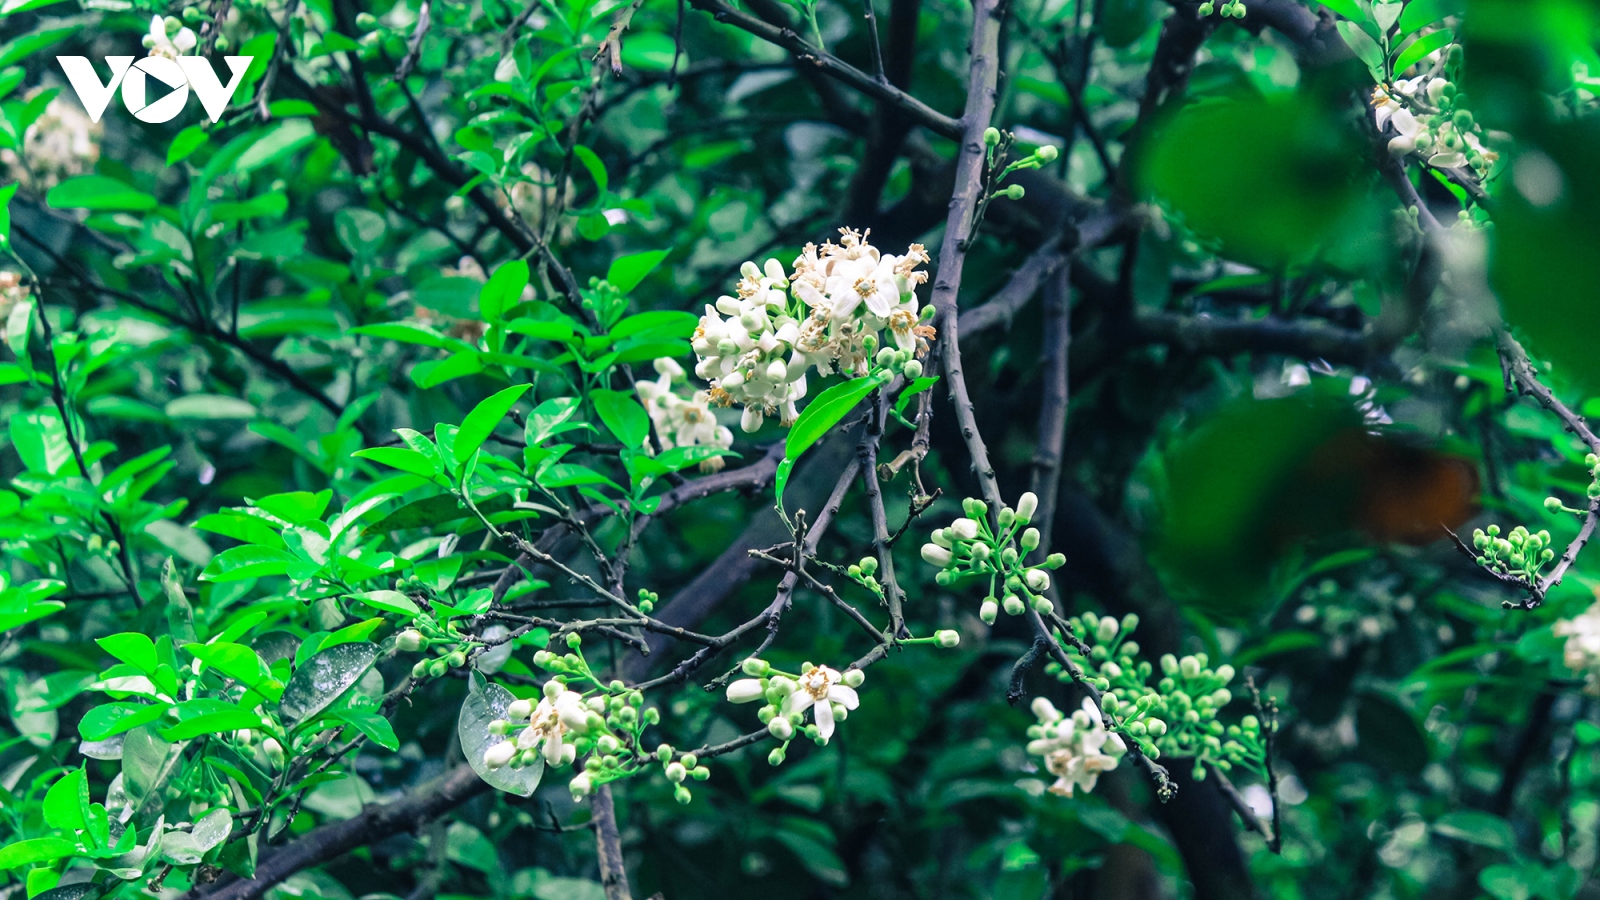 Hoa bưởi bung nở trắng trời ở làng trồng bưởi nổi tiếng Hà Nội